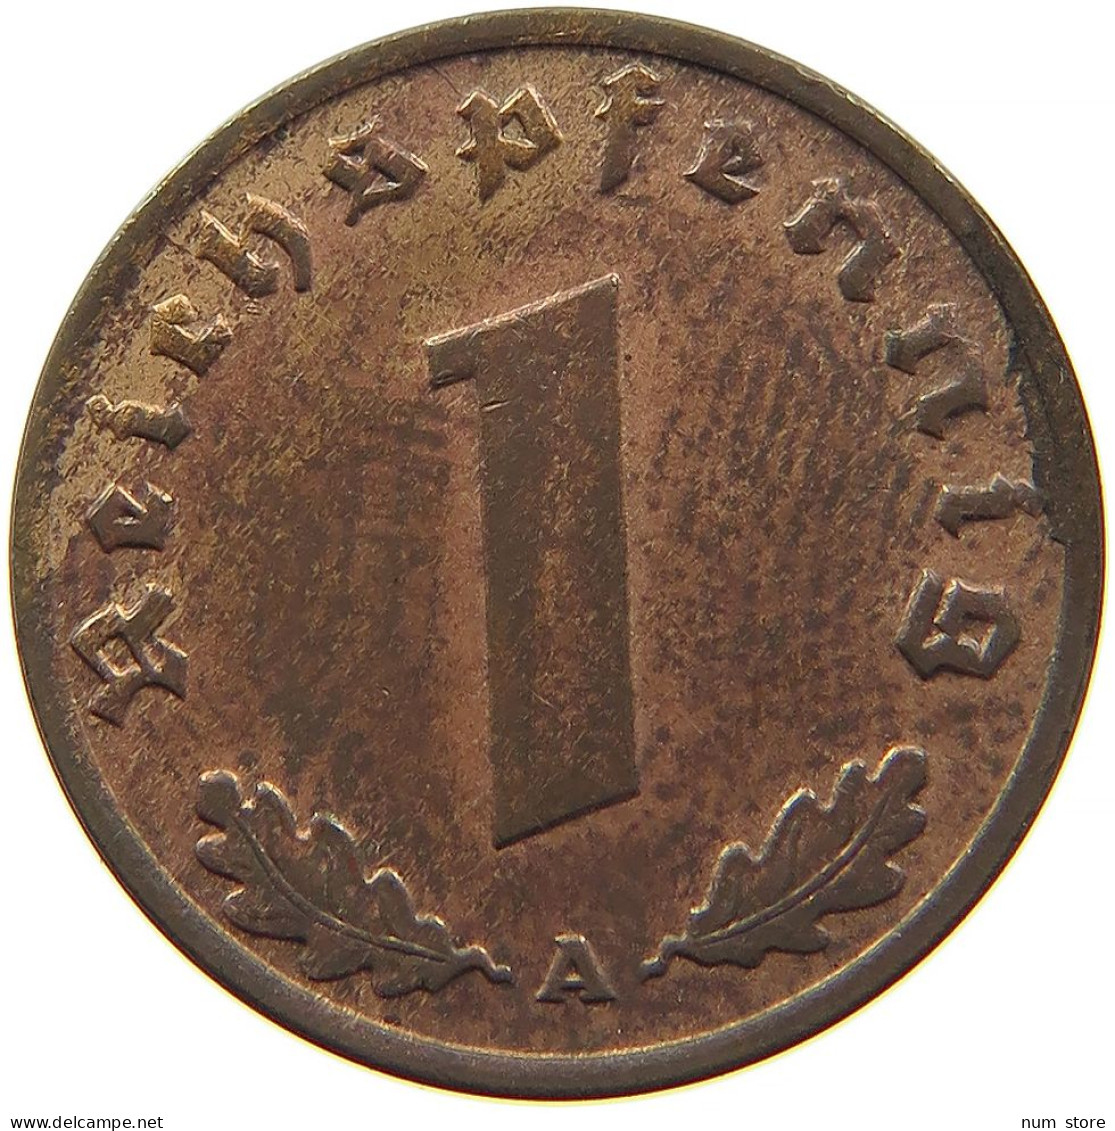 GERMANY 1 REICHSPFENNIG 1937 A #s096 0113 - 1 Reichspfennig